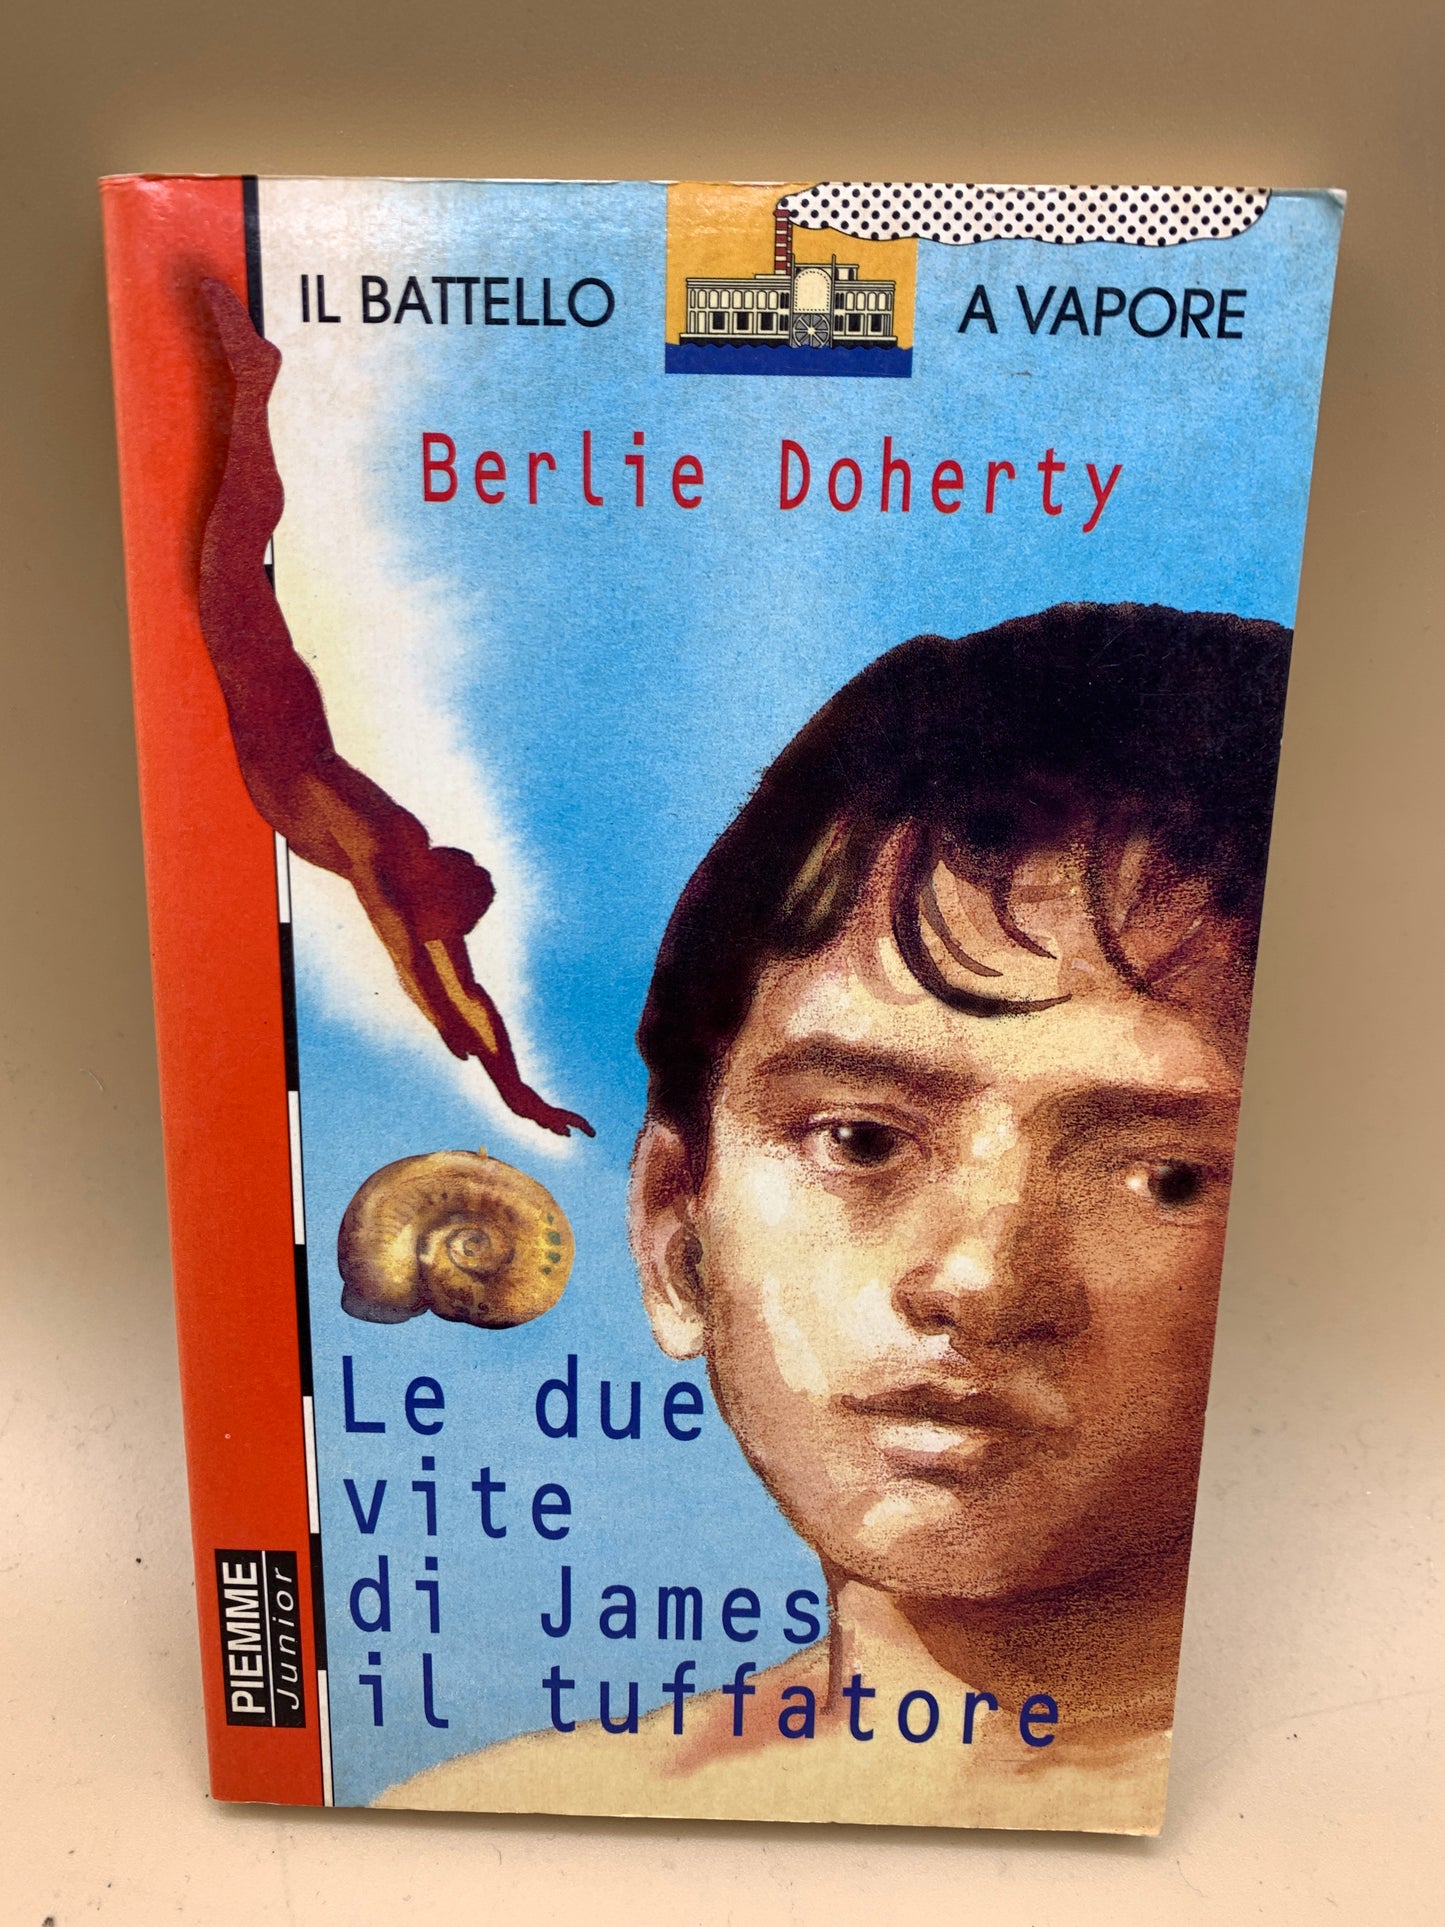 Il battello a vapore - la due vite di James il tuffatore - Berlie Doherty